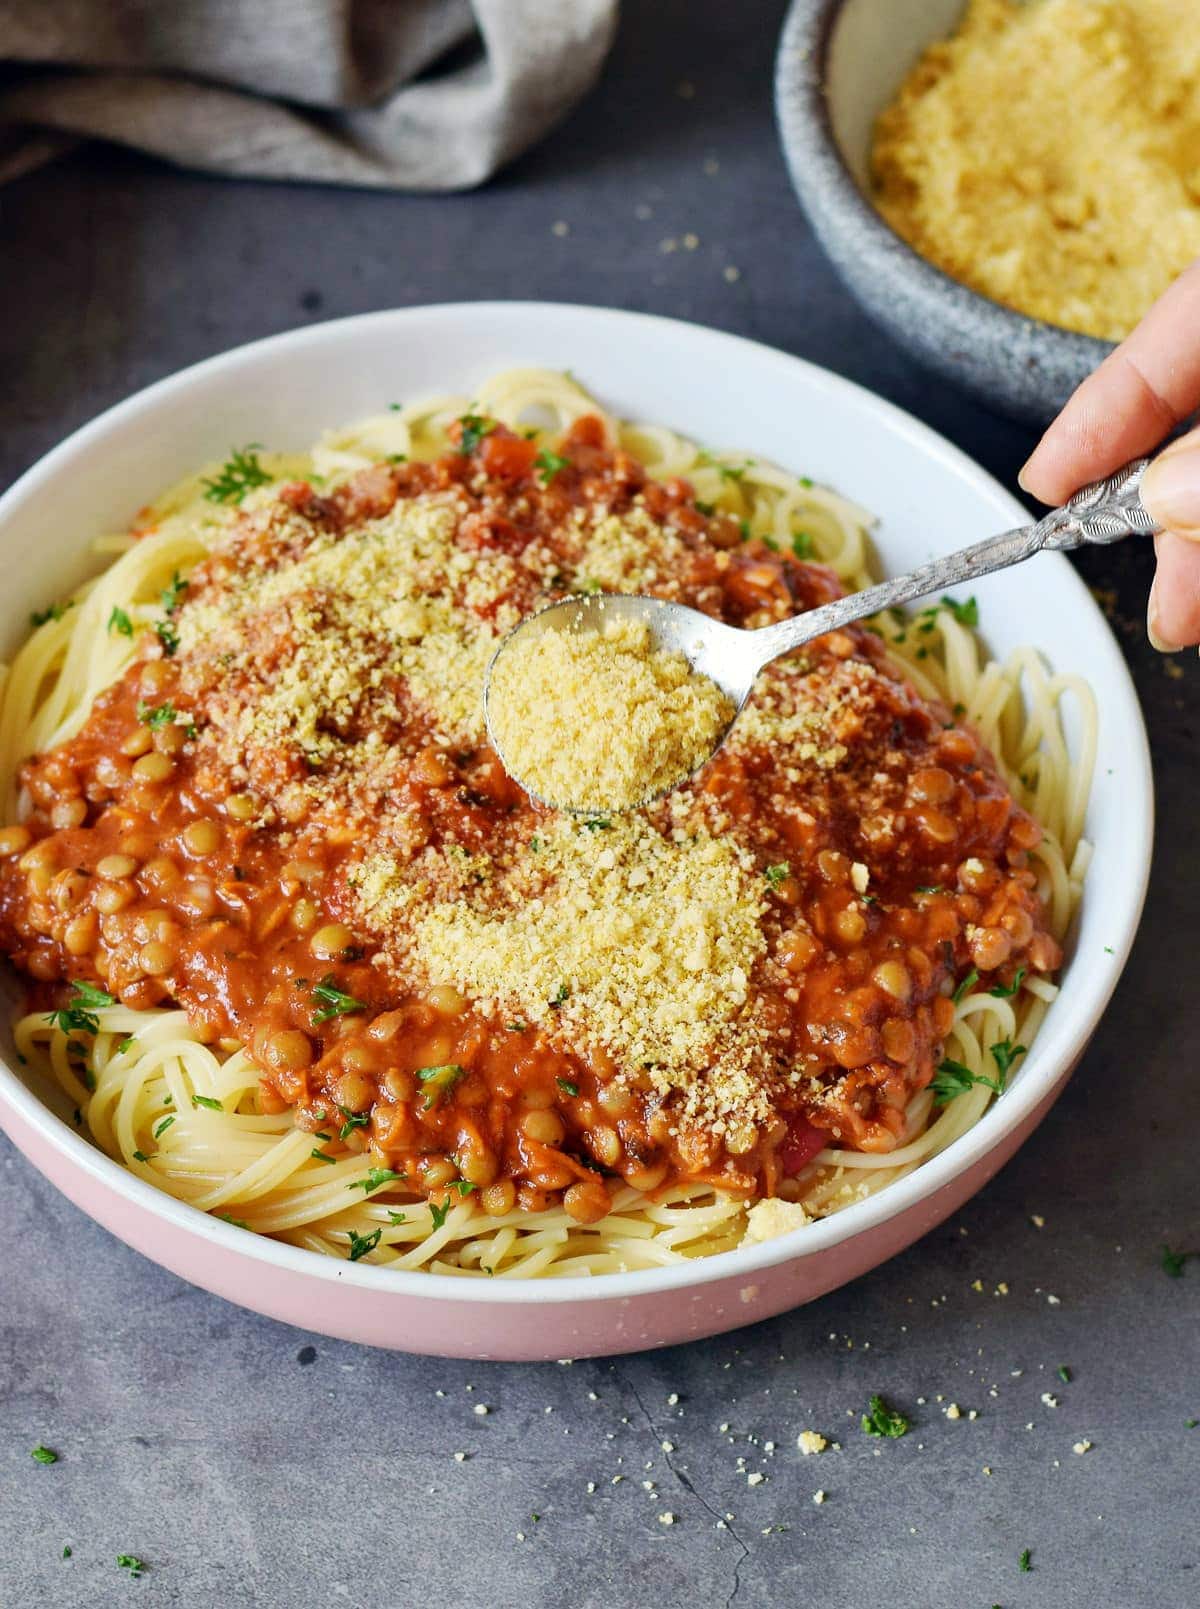 Löffel mit Parmesan Ersatz wird über Spaghetti Bolognese mit Linsen gestreut